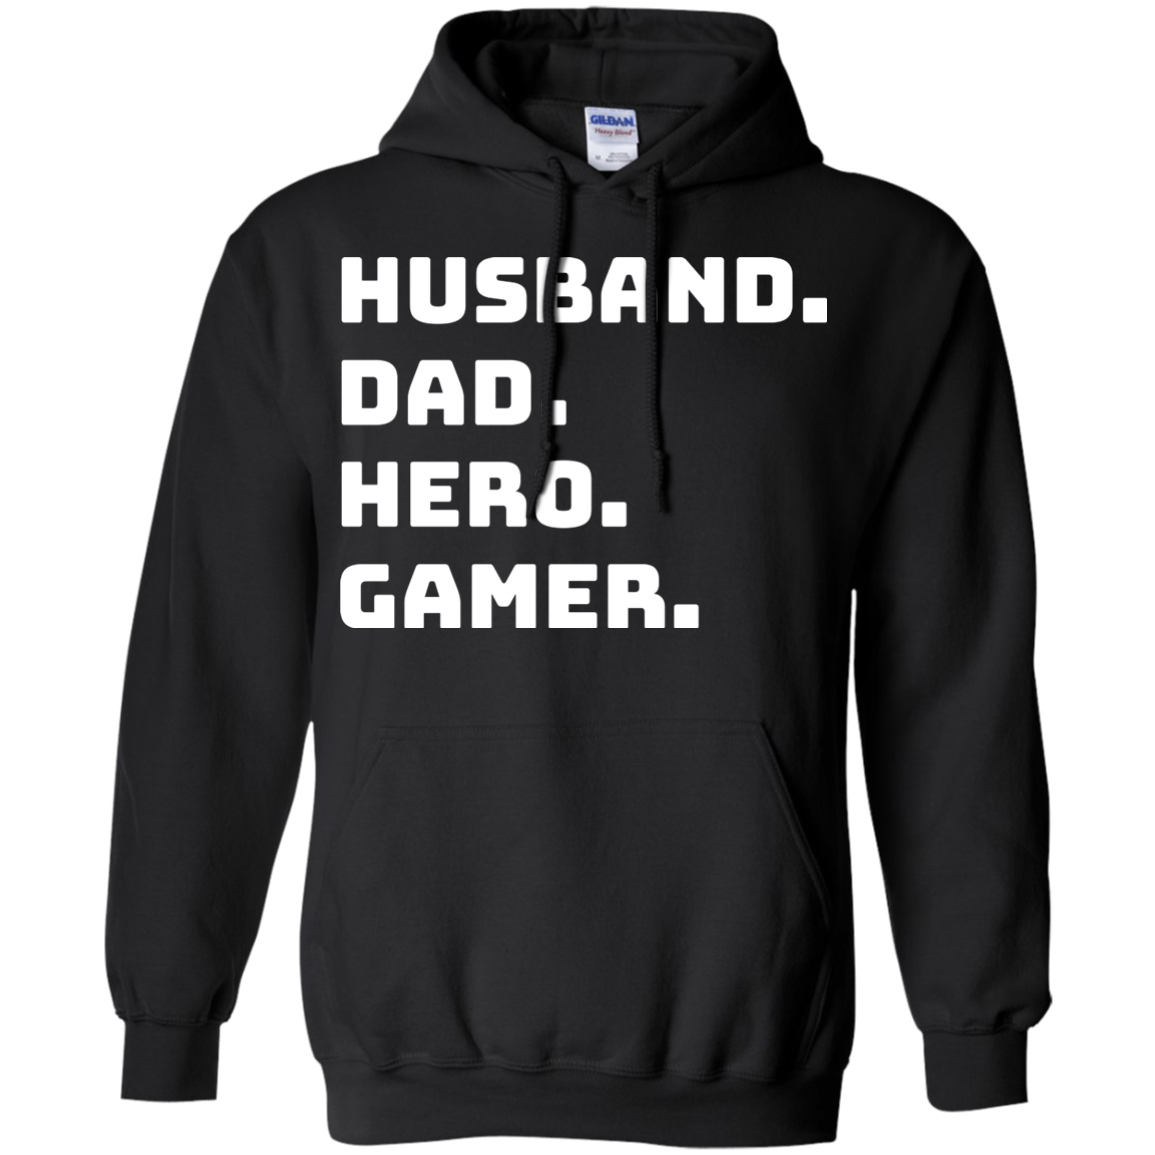 Husband Dad Hero Gamer - Video Gaming Shirt